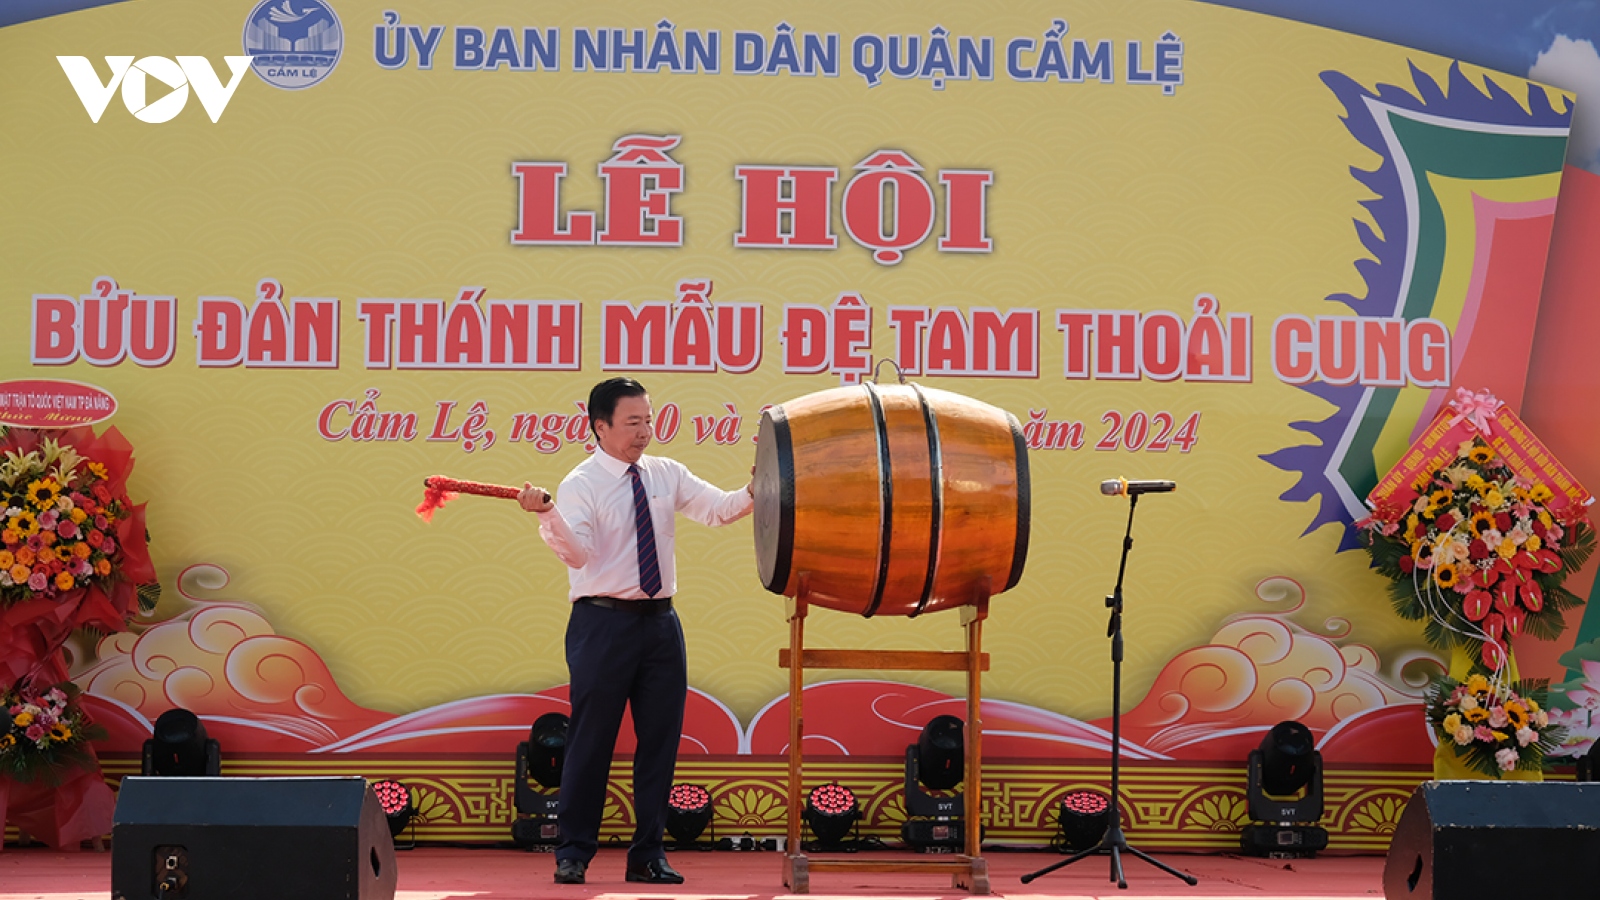 Cộng đồng tín ngưỡng thờ Mẫu tổ chức lễ hội truyền thống tại Đà Nẵng